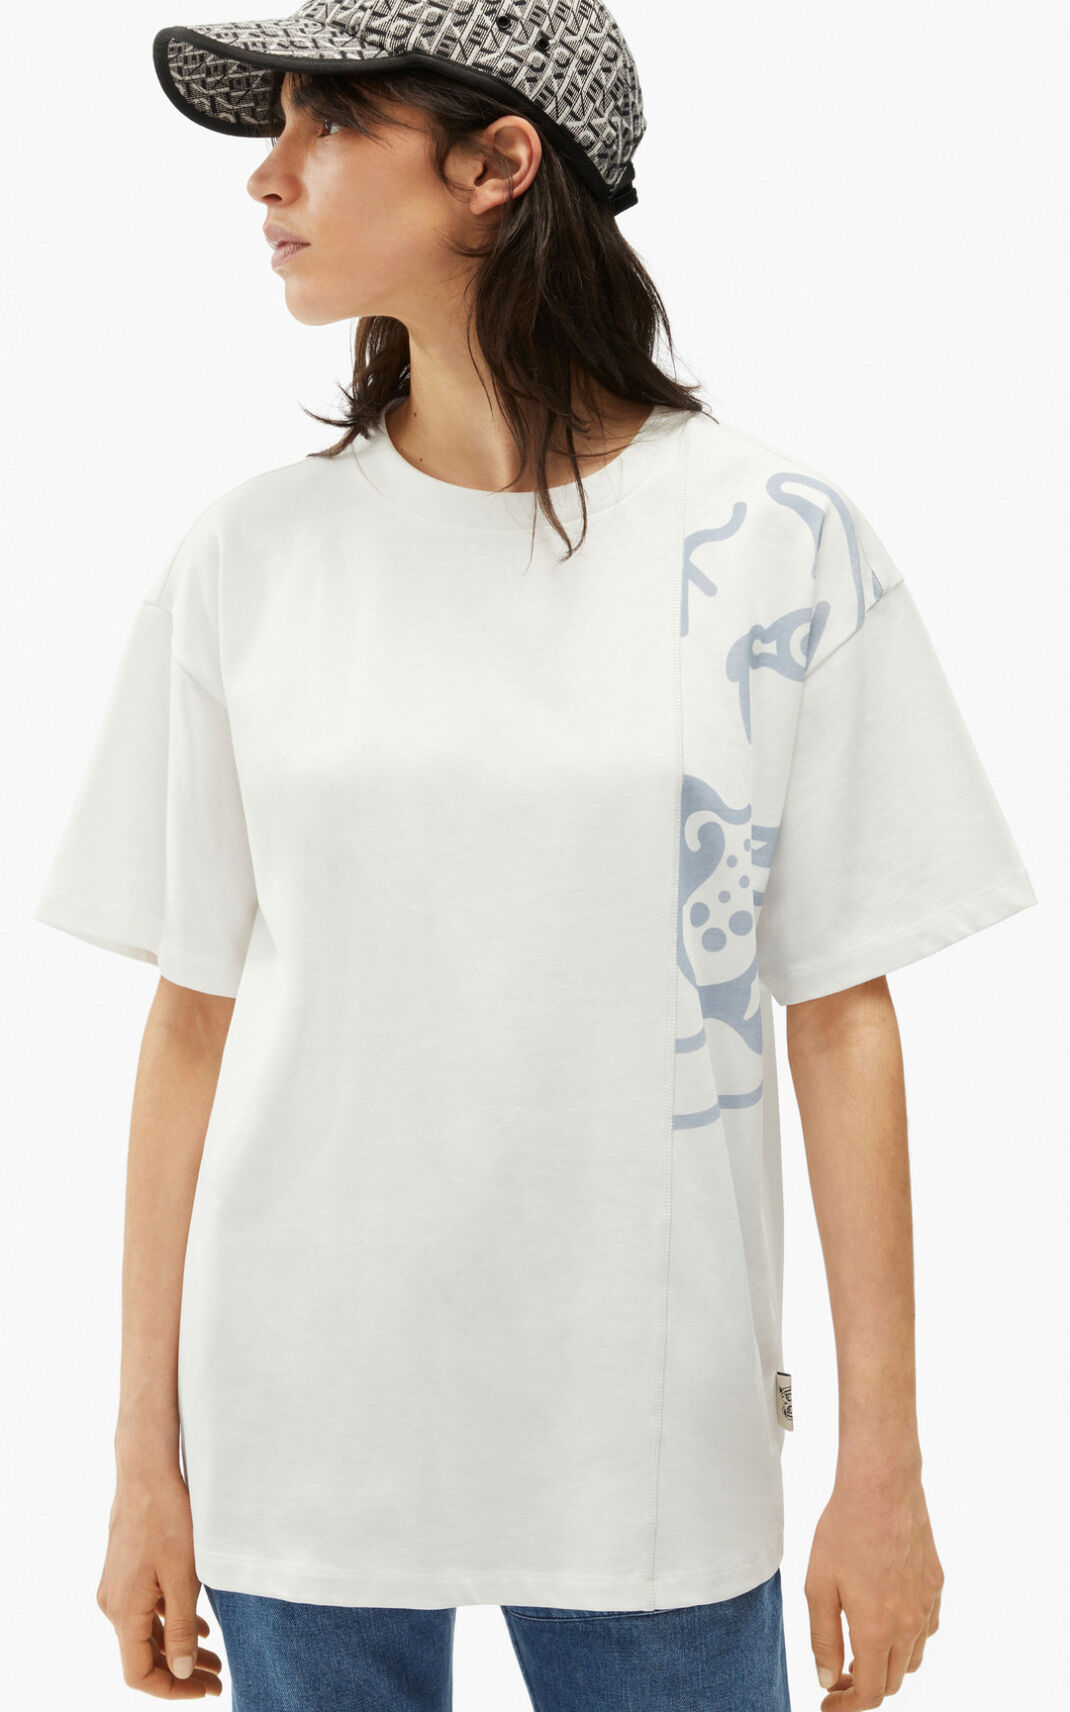 Camisetas Kenzo K Tiger oversized Mujer Blancas - SKU.6125531